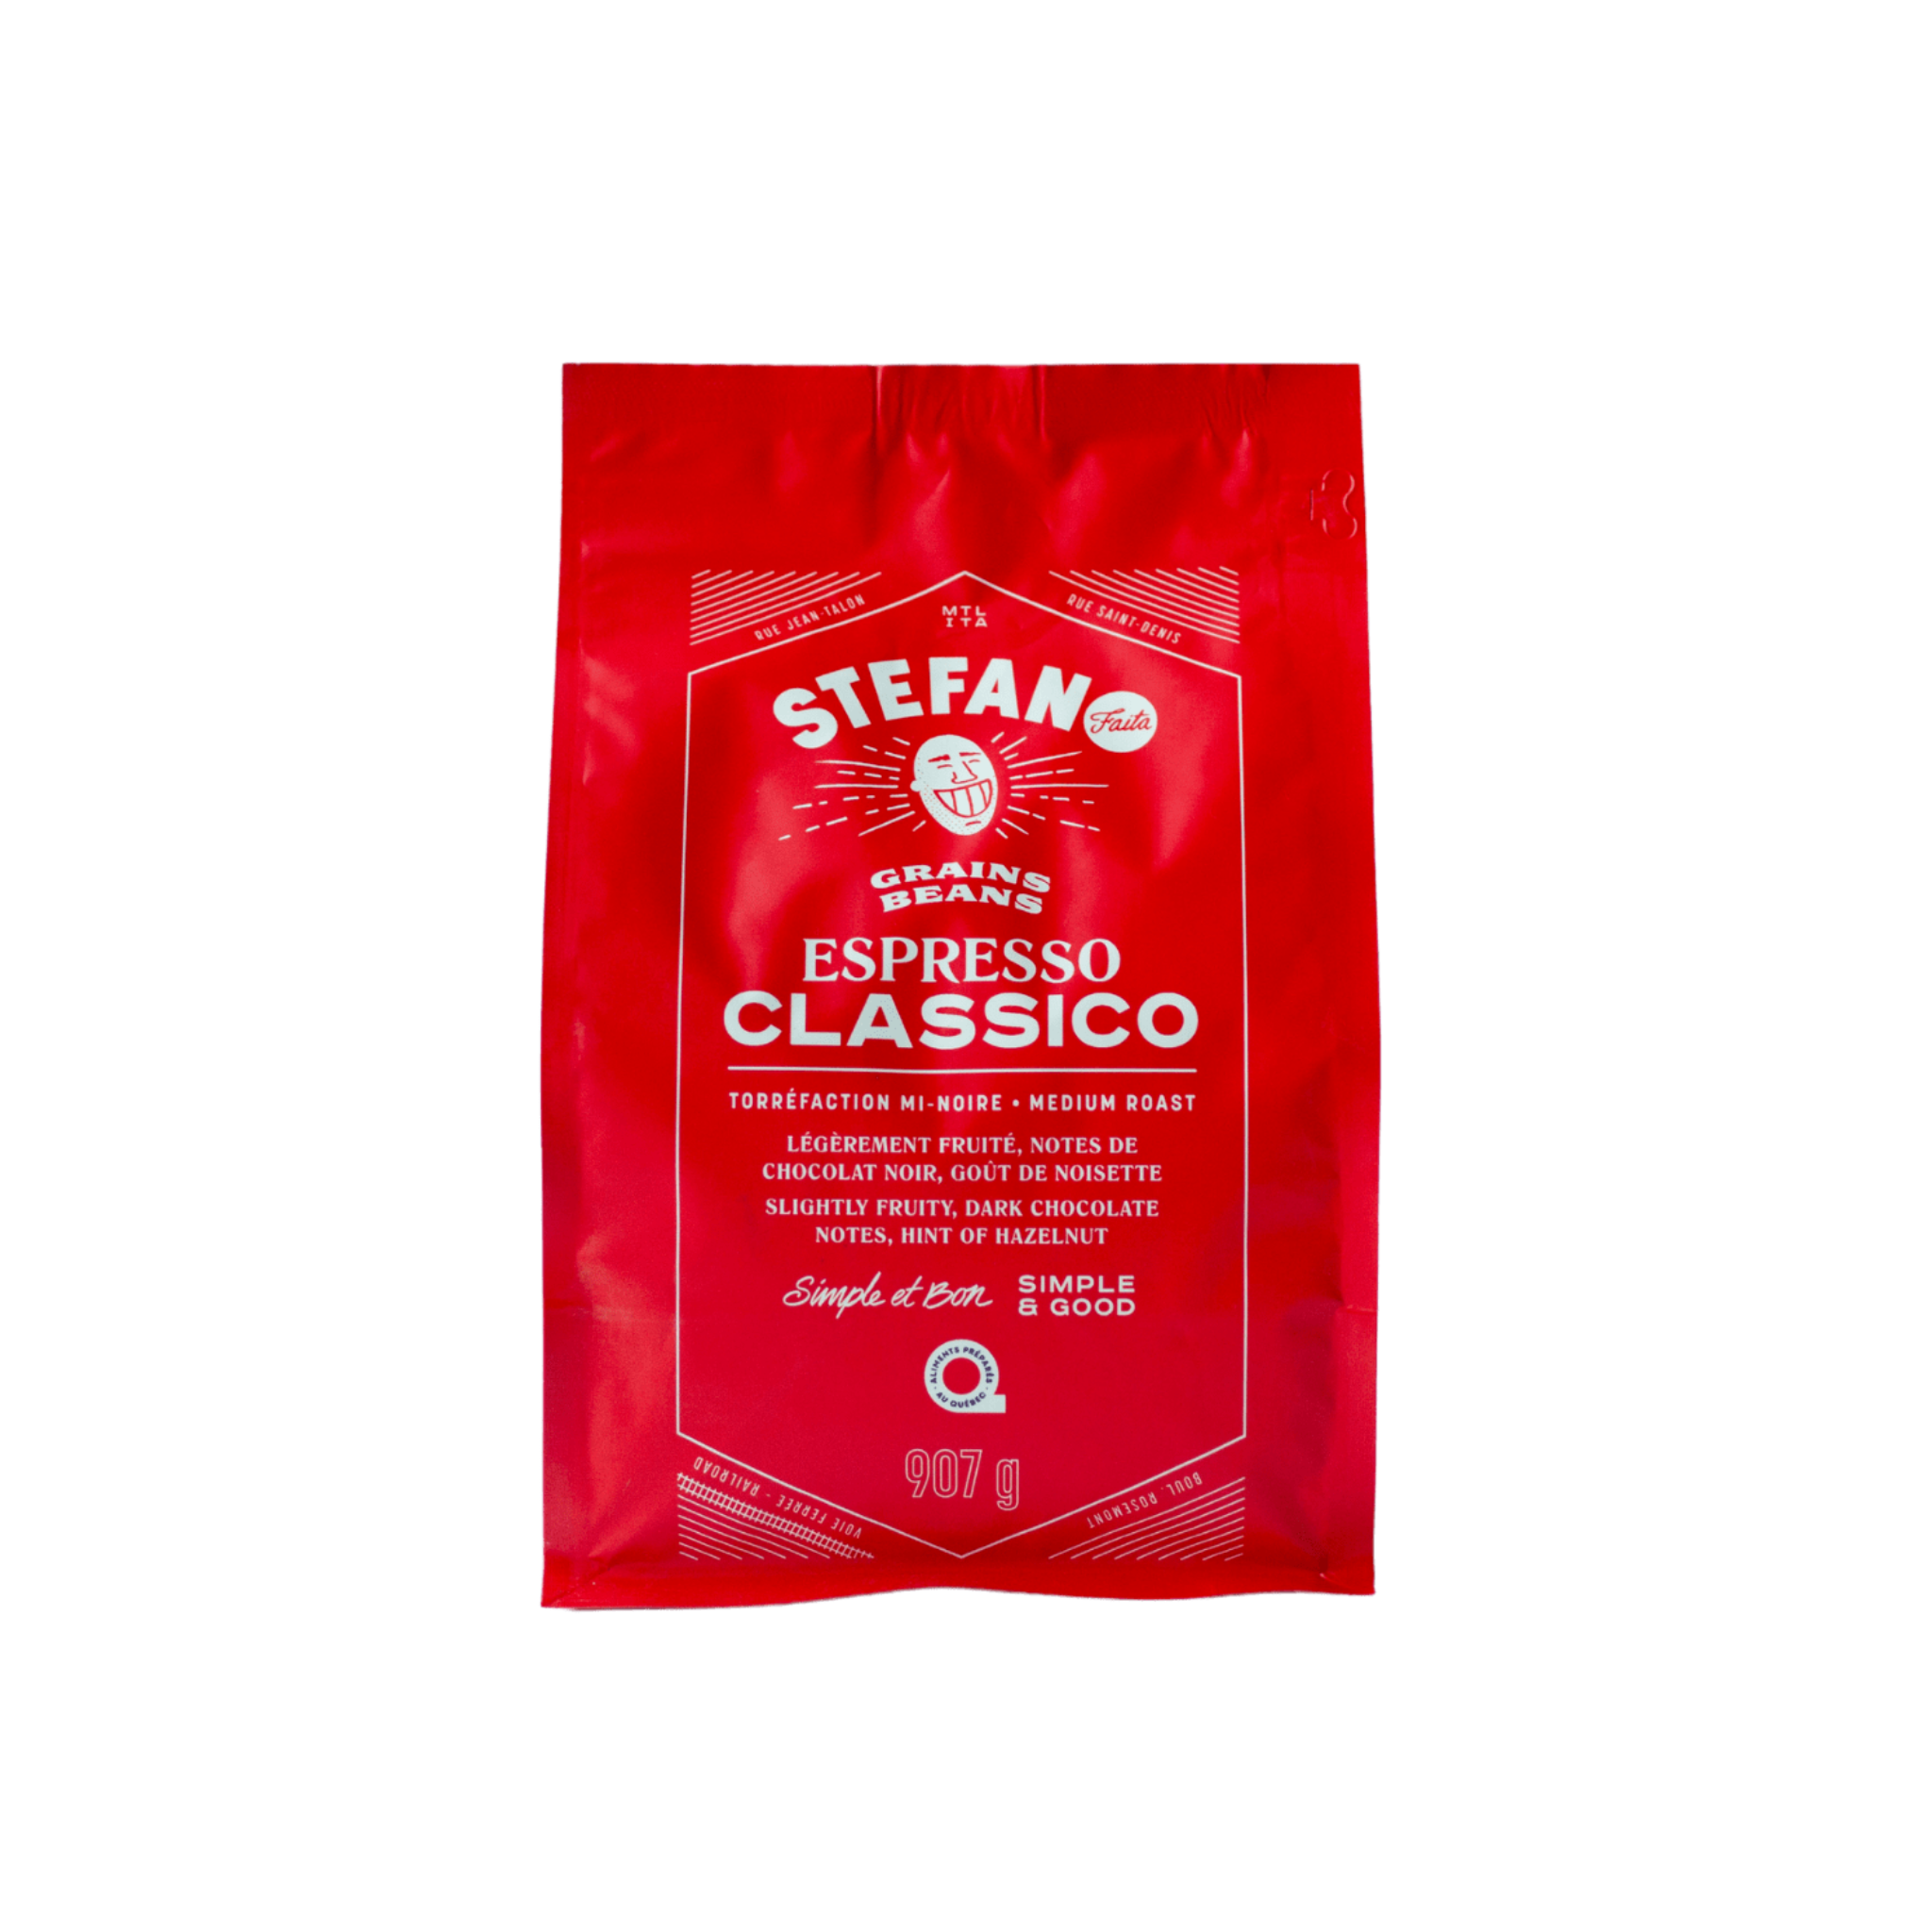 Stefano Coffee Espresso Classico Beans